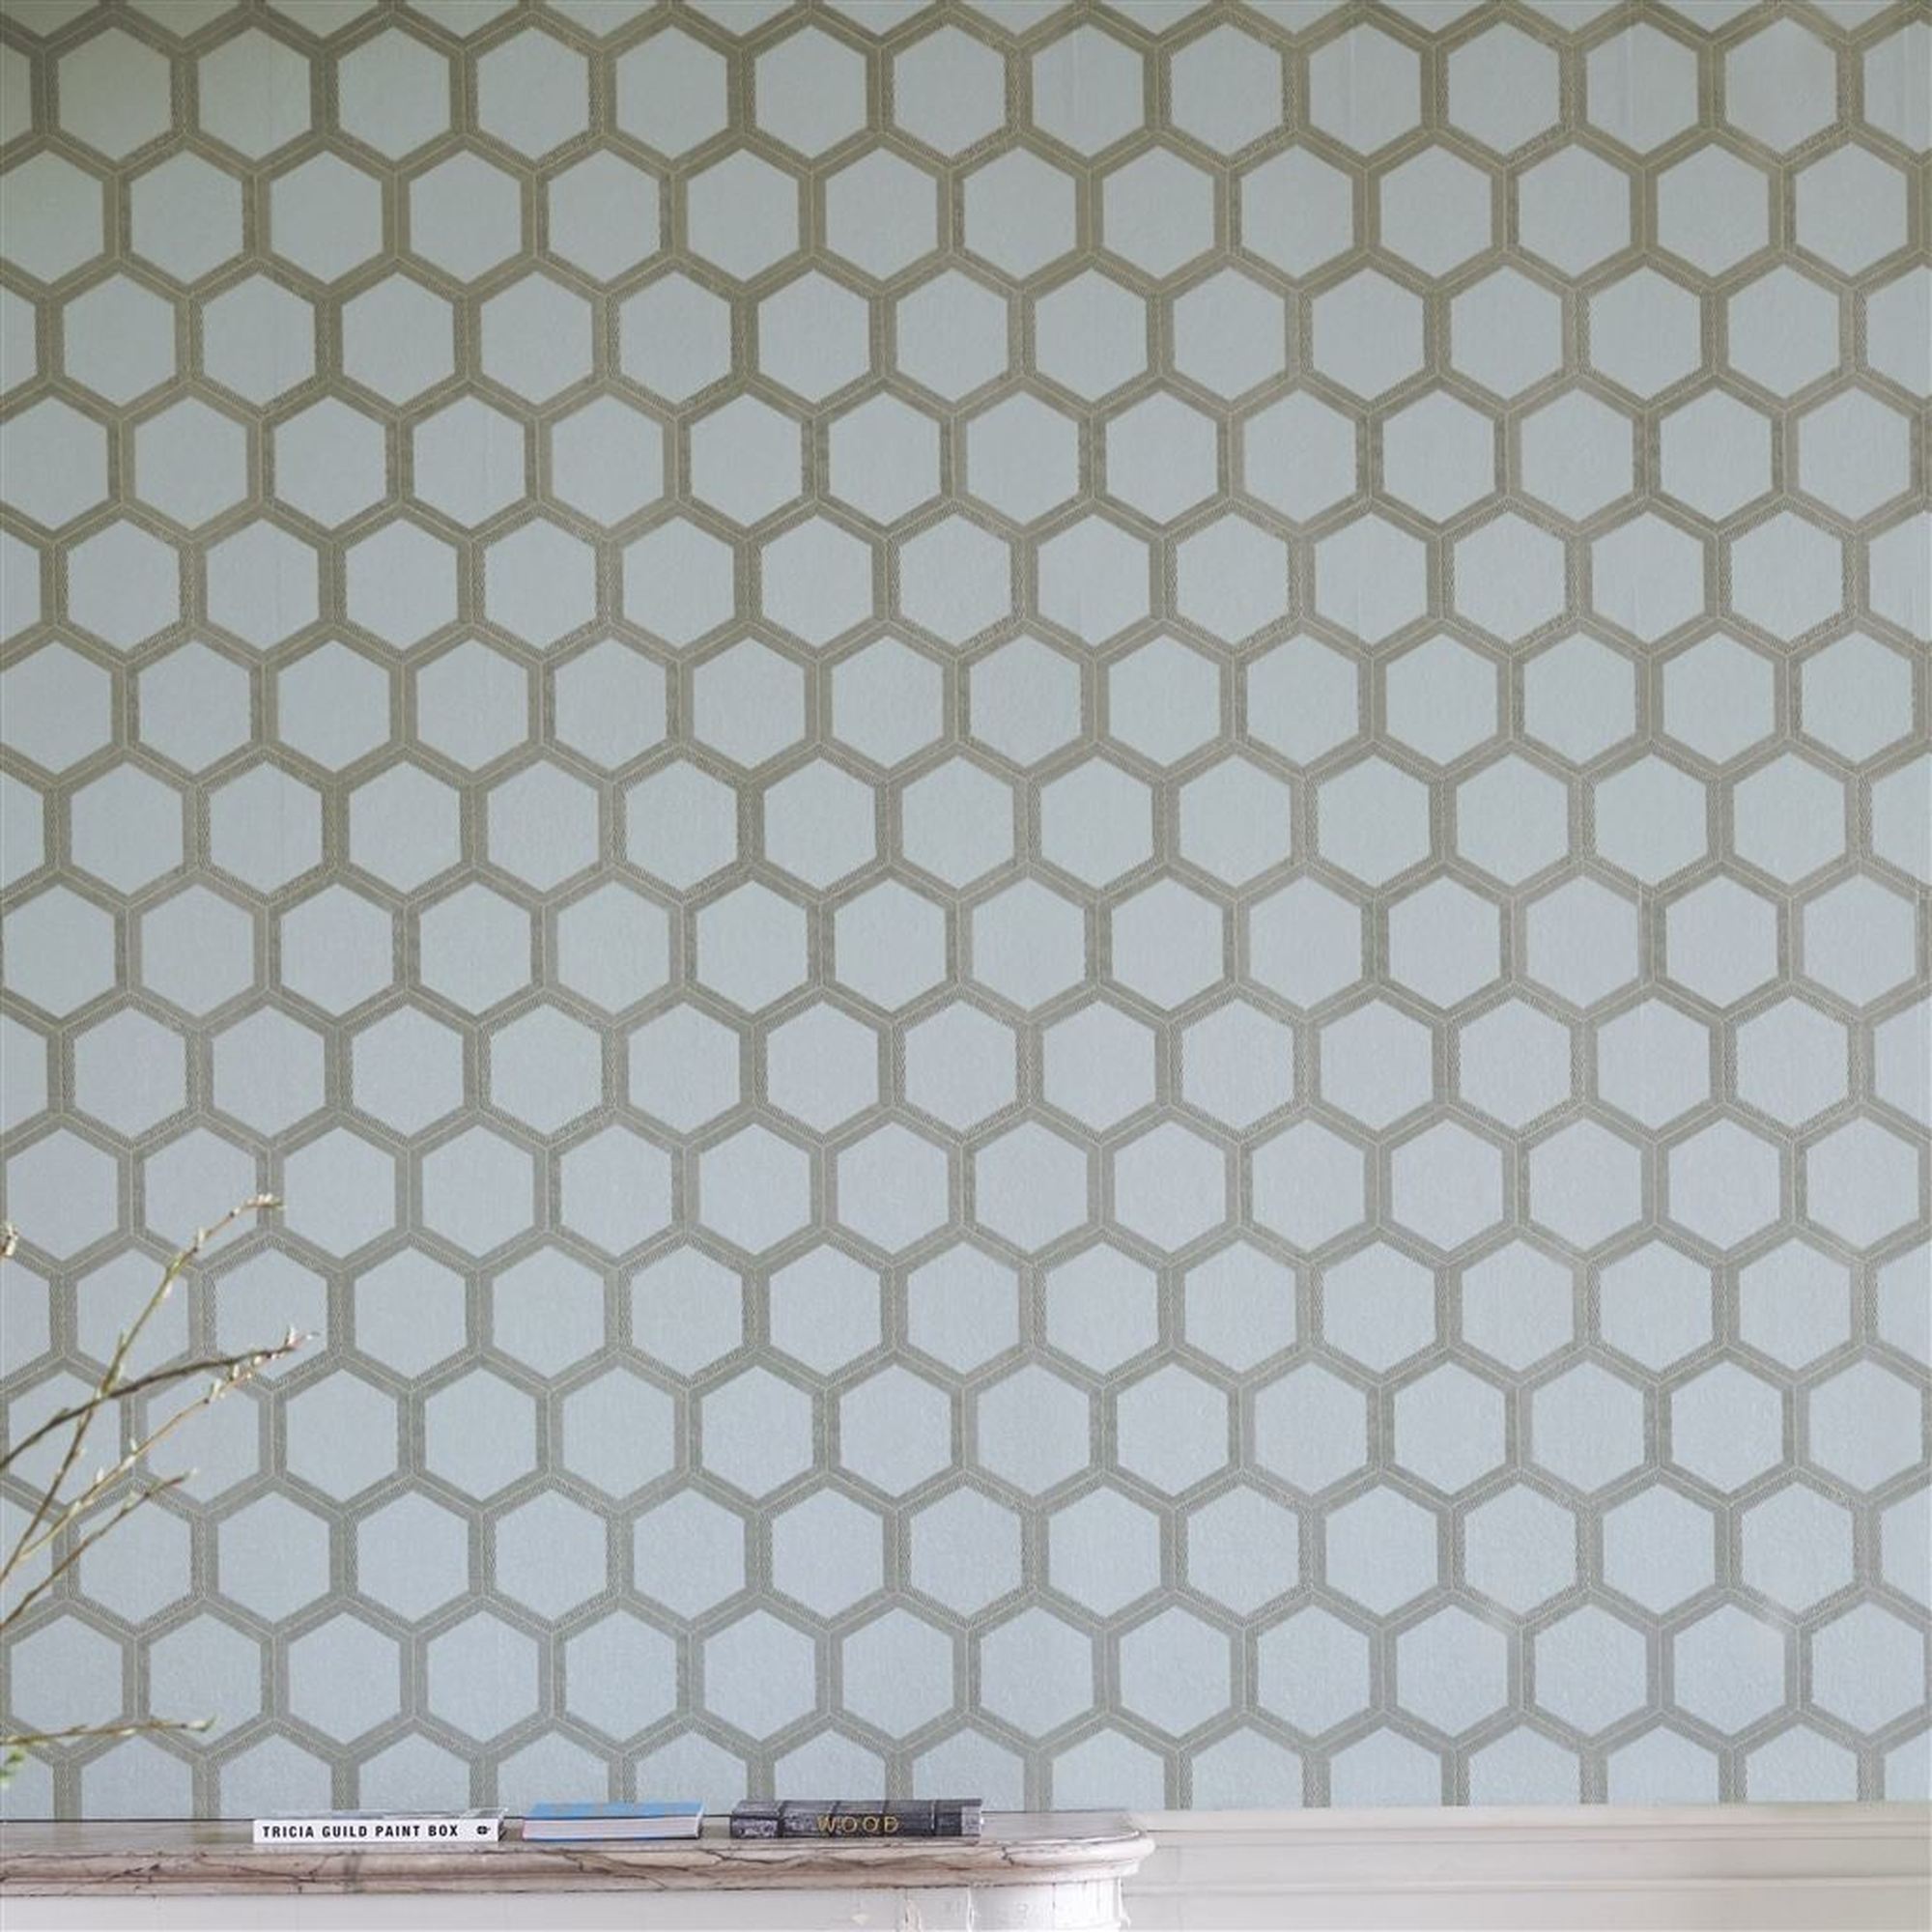 Honeycomb Texture Seamless - HD Wallpaper 